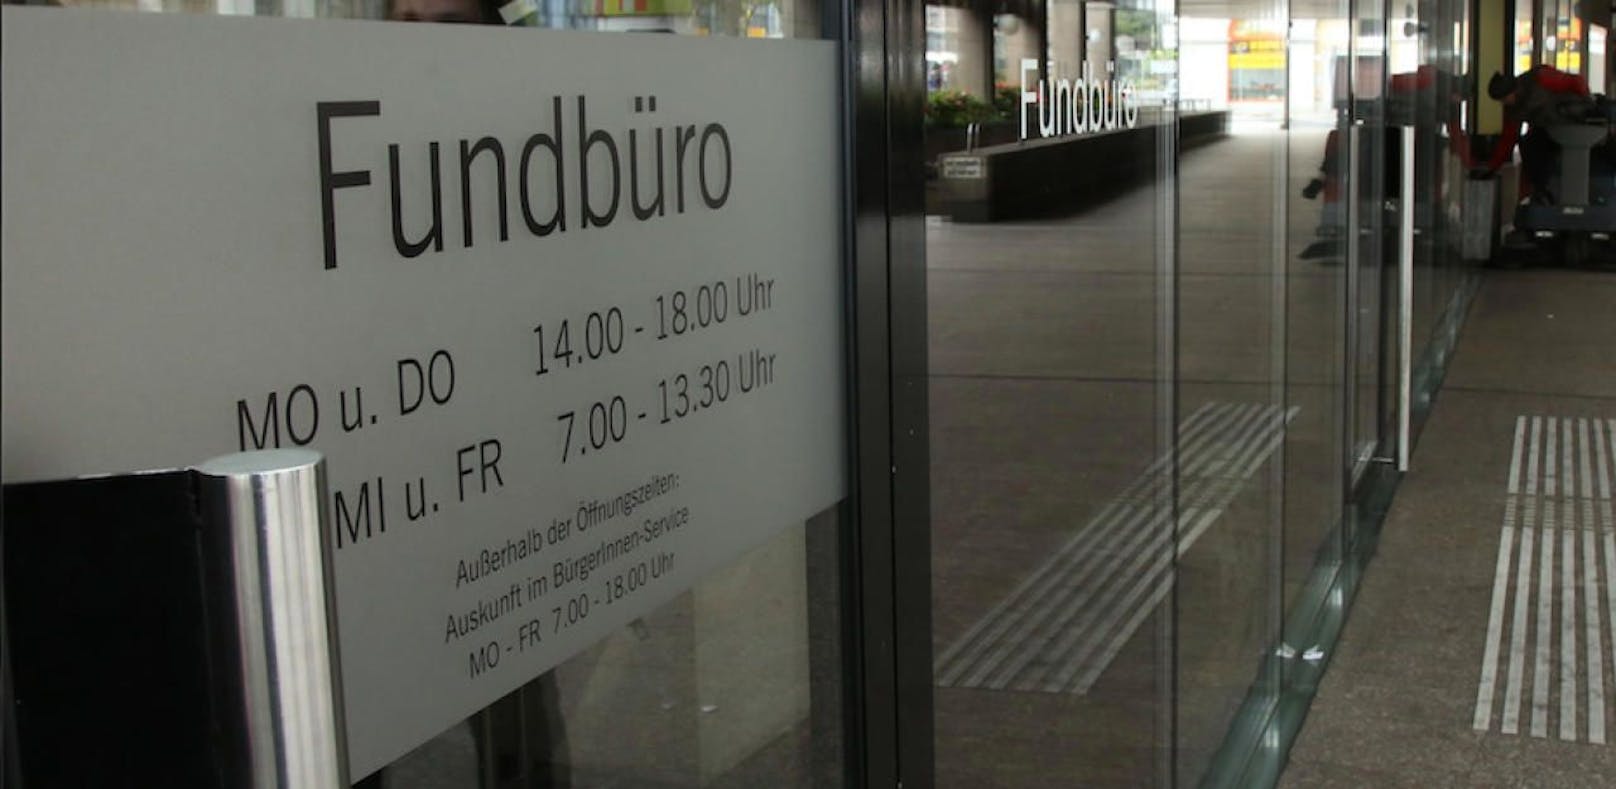 70.000 Euro aus einer Handkasse warteten in Linzer Fundbüro auf seinen Besitzer.